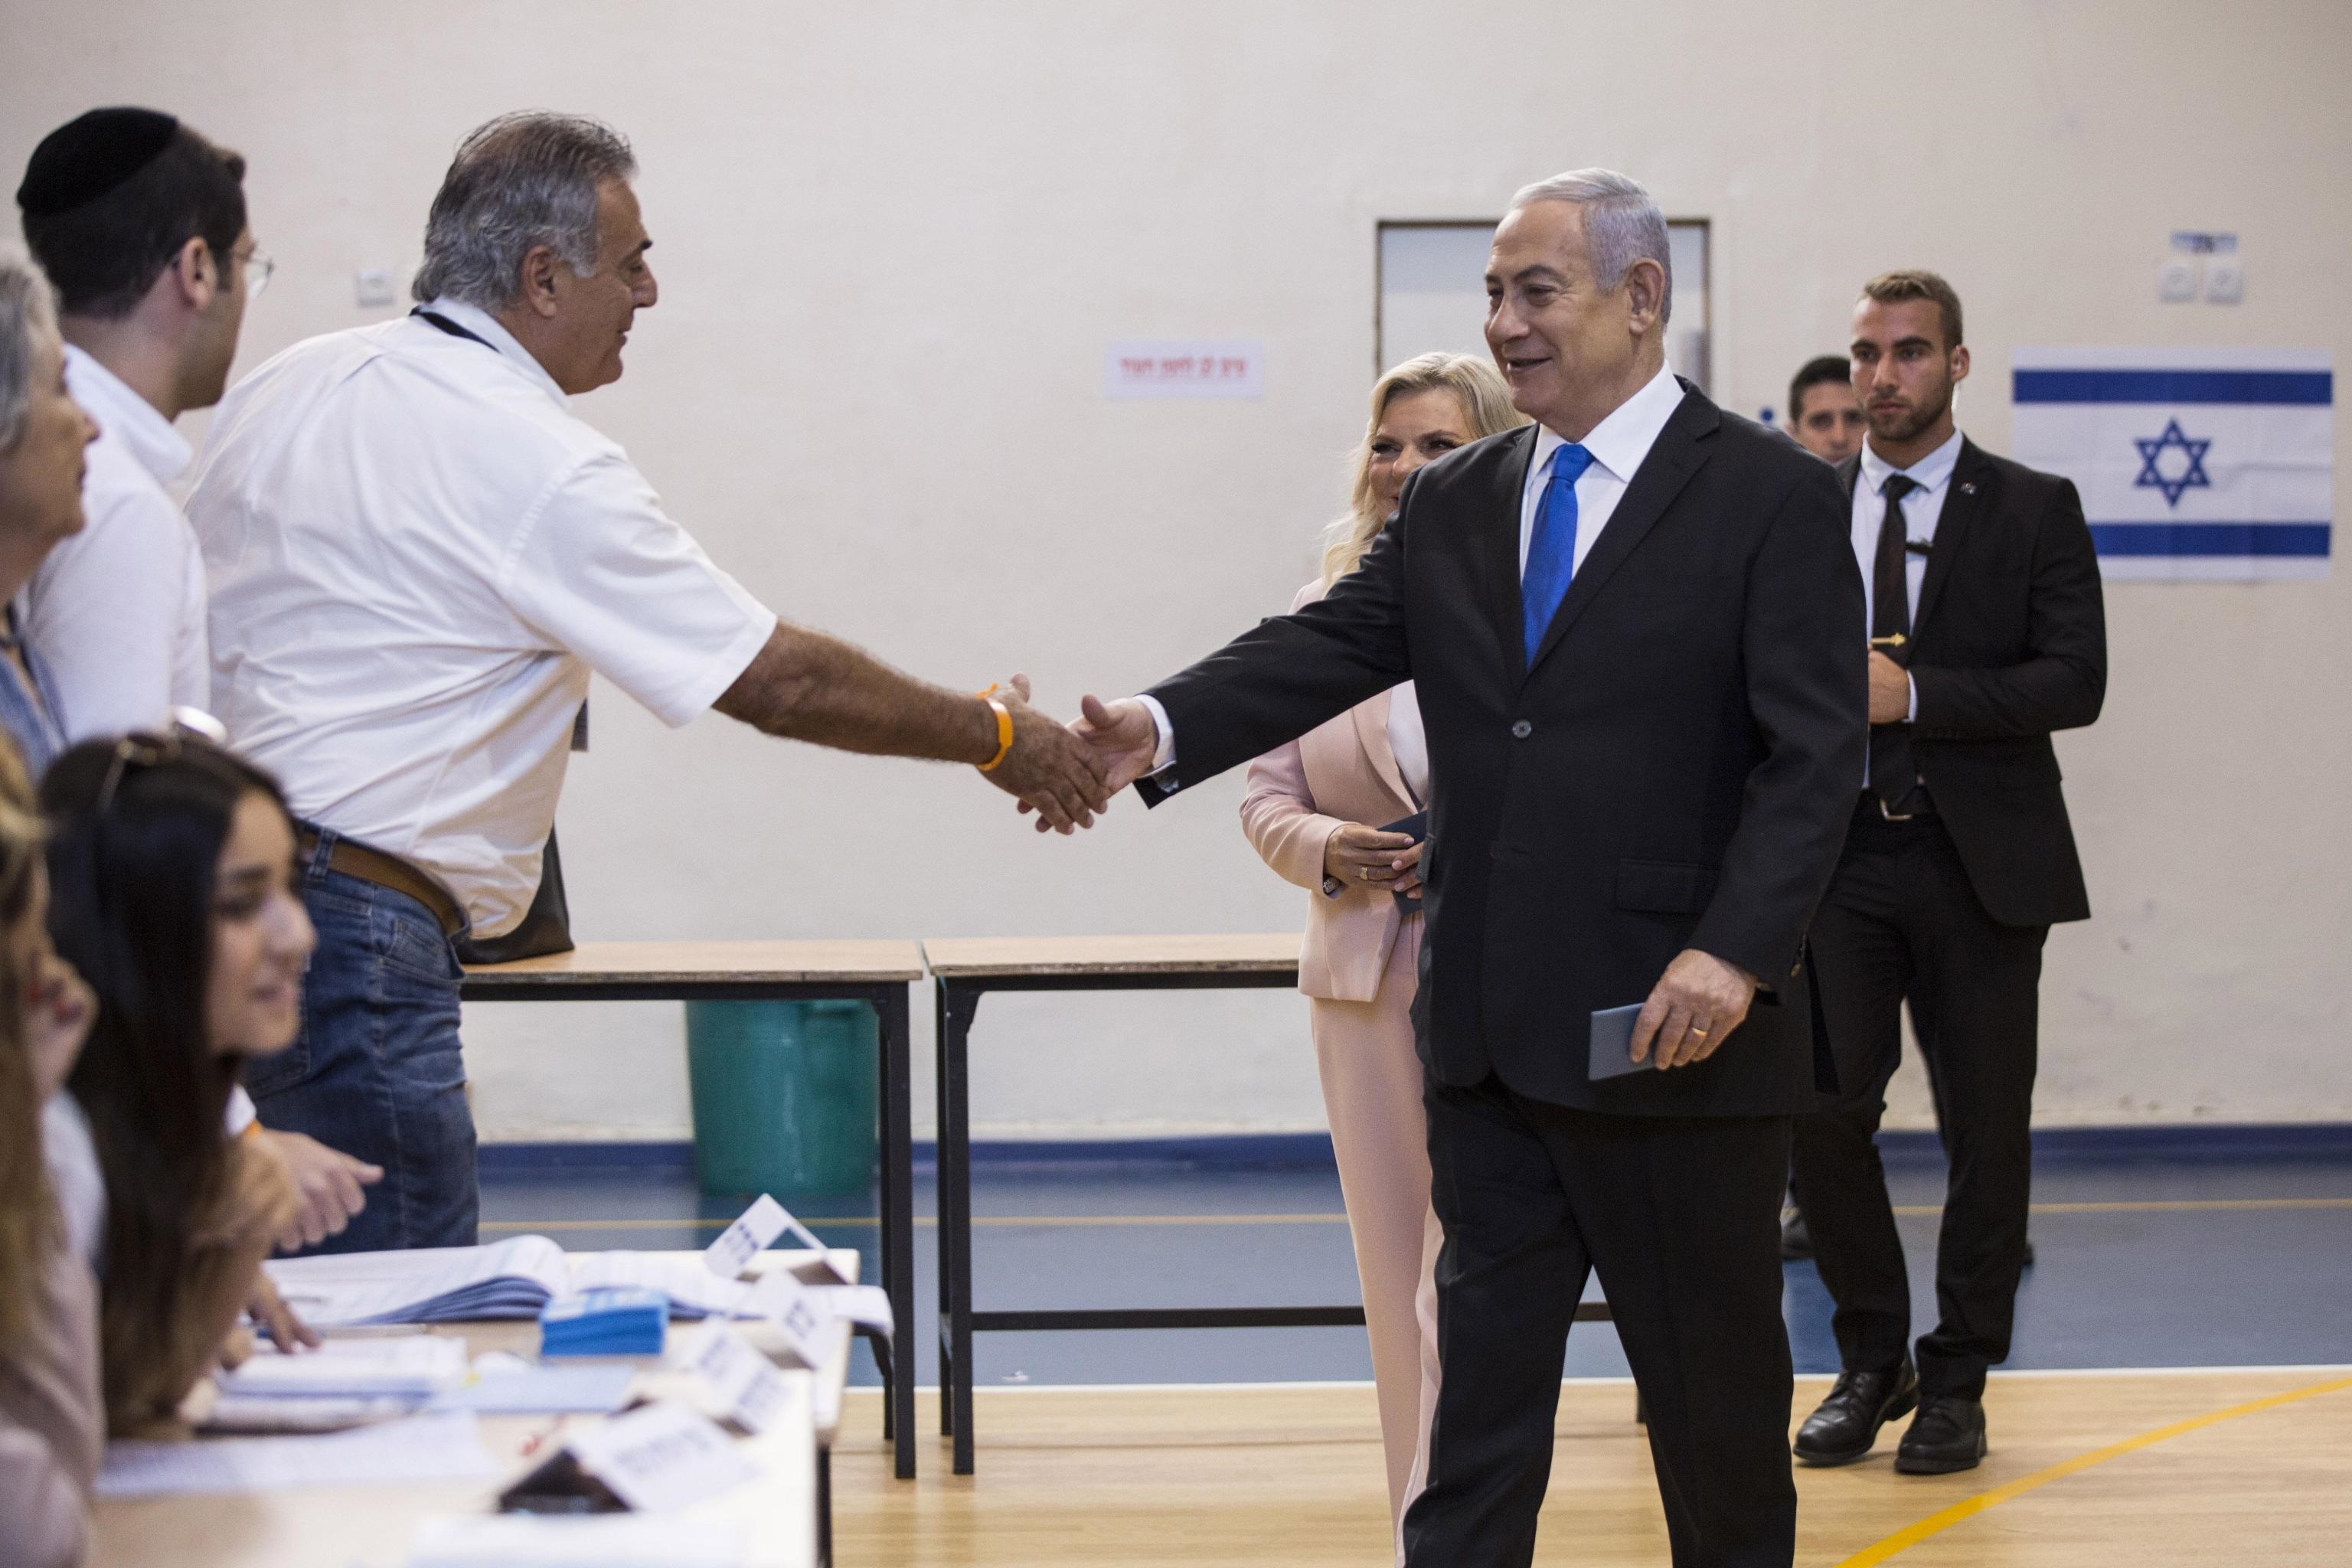 L'arrivo ai seggi del Primo Ministro Benjamin Netanyahu